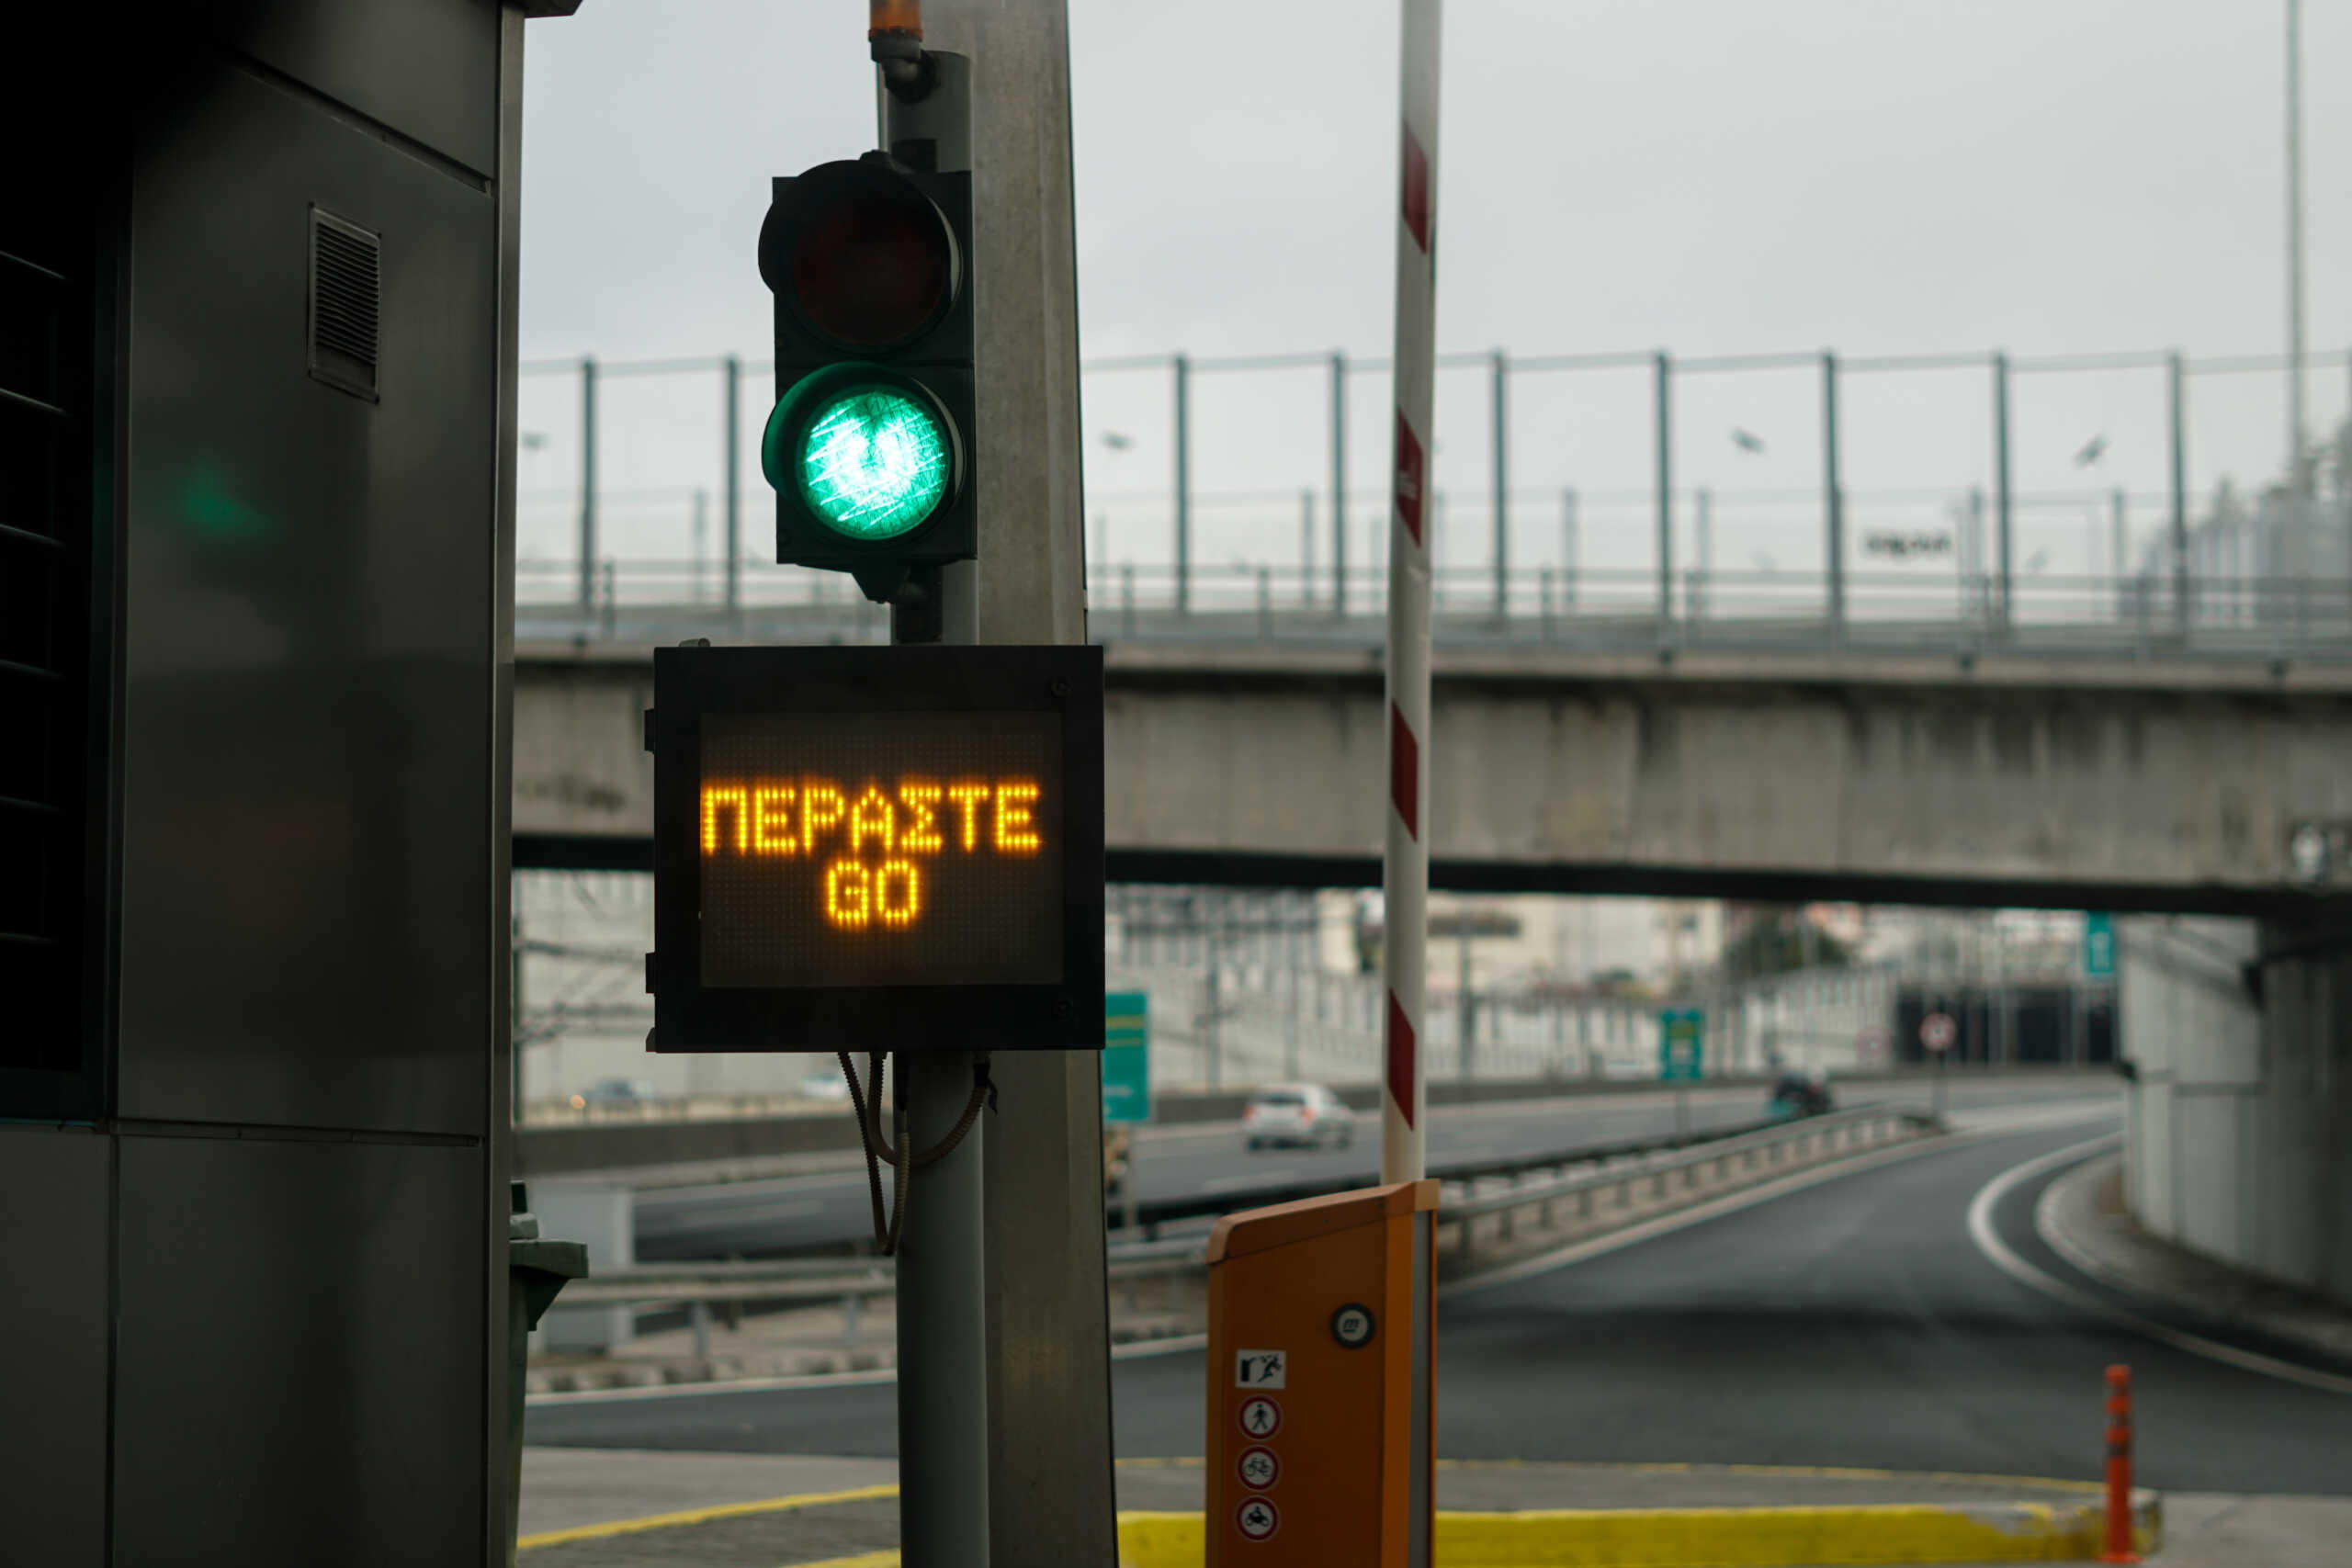 Αττική Οδός: Κλειστή η είσοδος από Μαρκόπουλο προς Αεροδρόμιο και Ελευσίνα το βράδυ της Δευτέρας